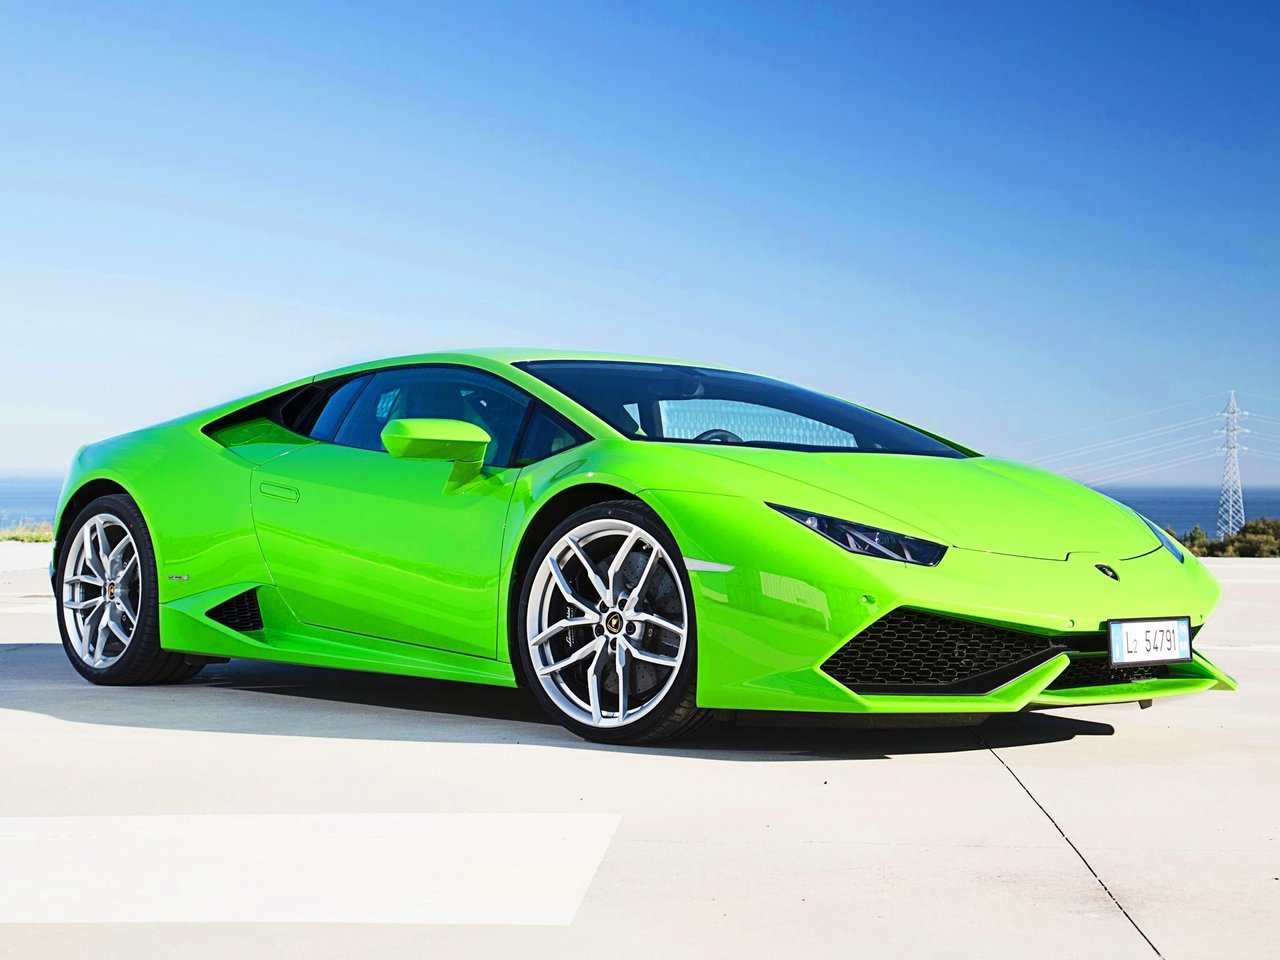 Расход газа одной комплектации купе Lamborghini Huracán. Разница стоимости заправки газом и бензином. Автономный пробег до и после установки ГБО.